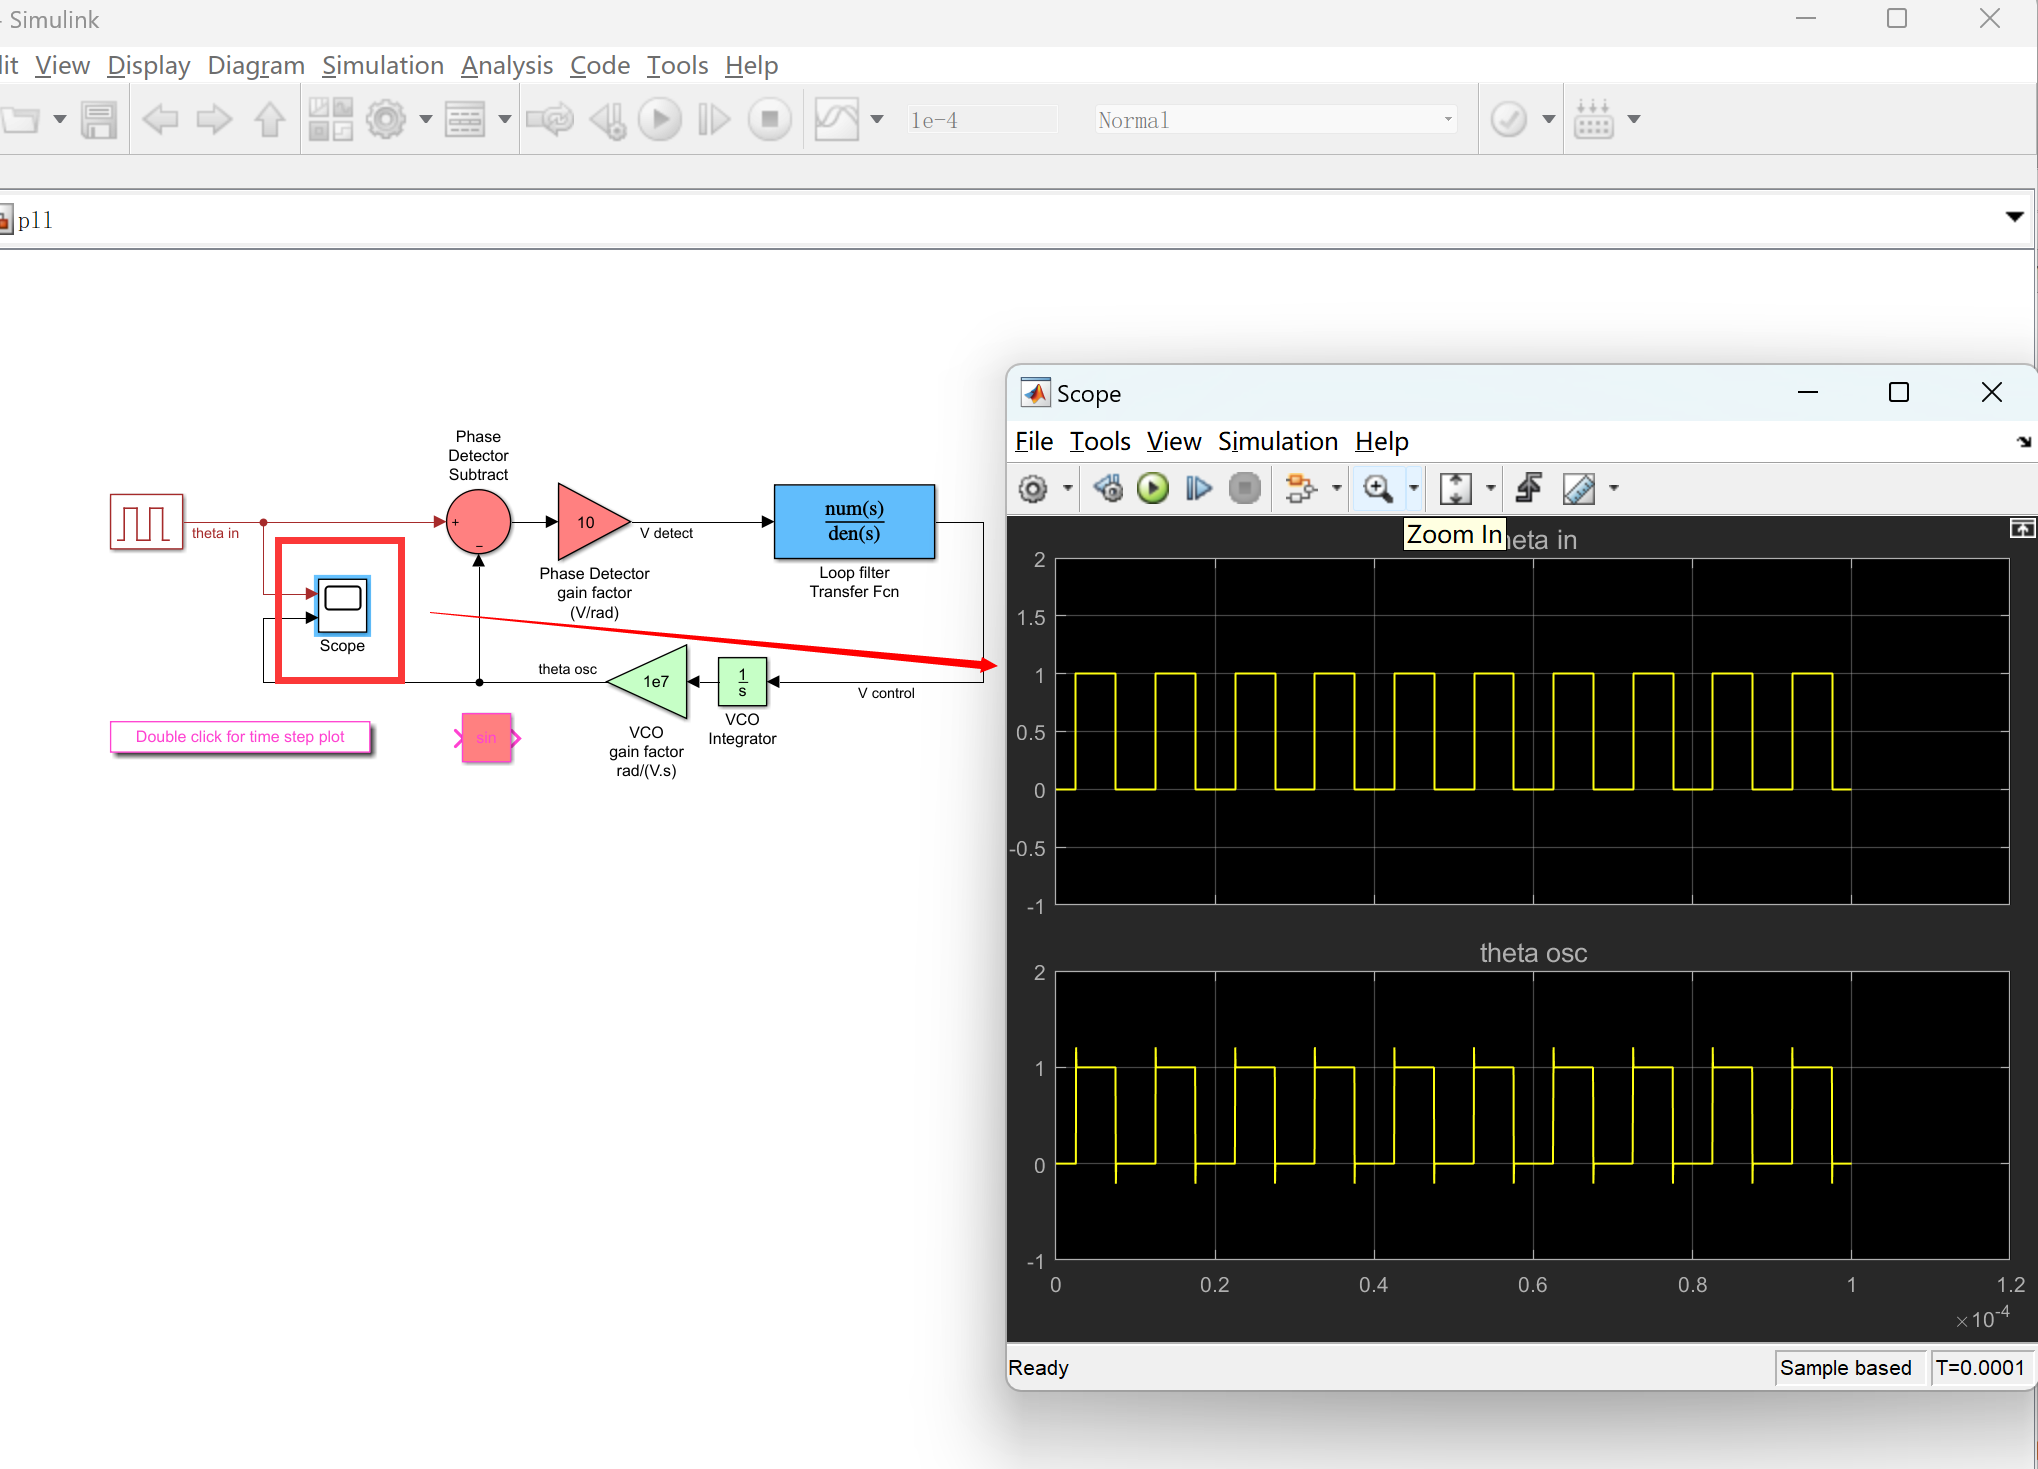 【电路效应】信号处理和通信系统模型中的模拟电路效应研究（SimulinkMatlab代码实现）